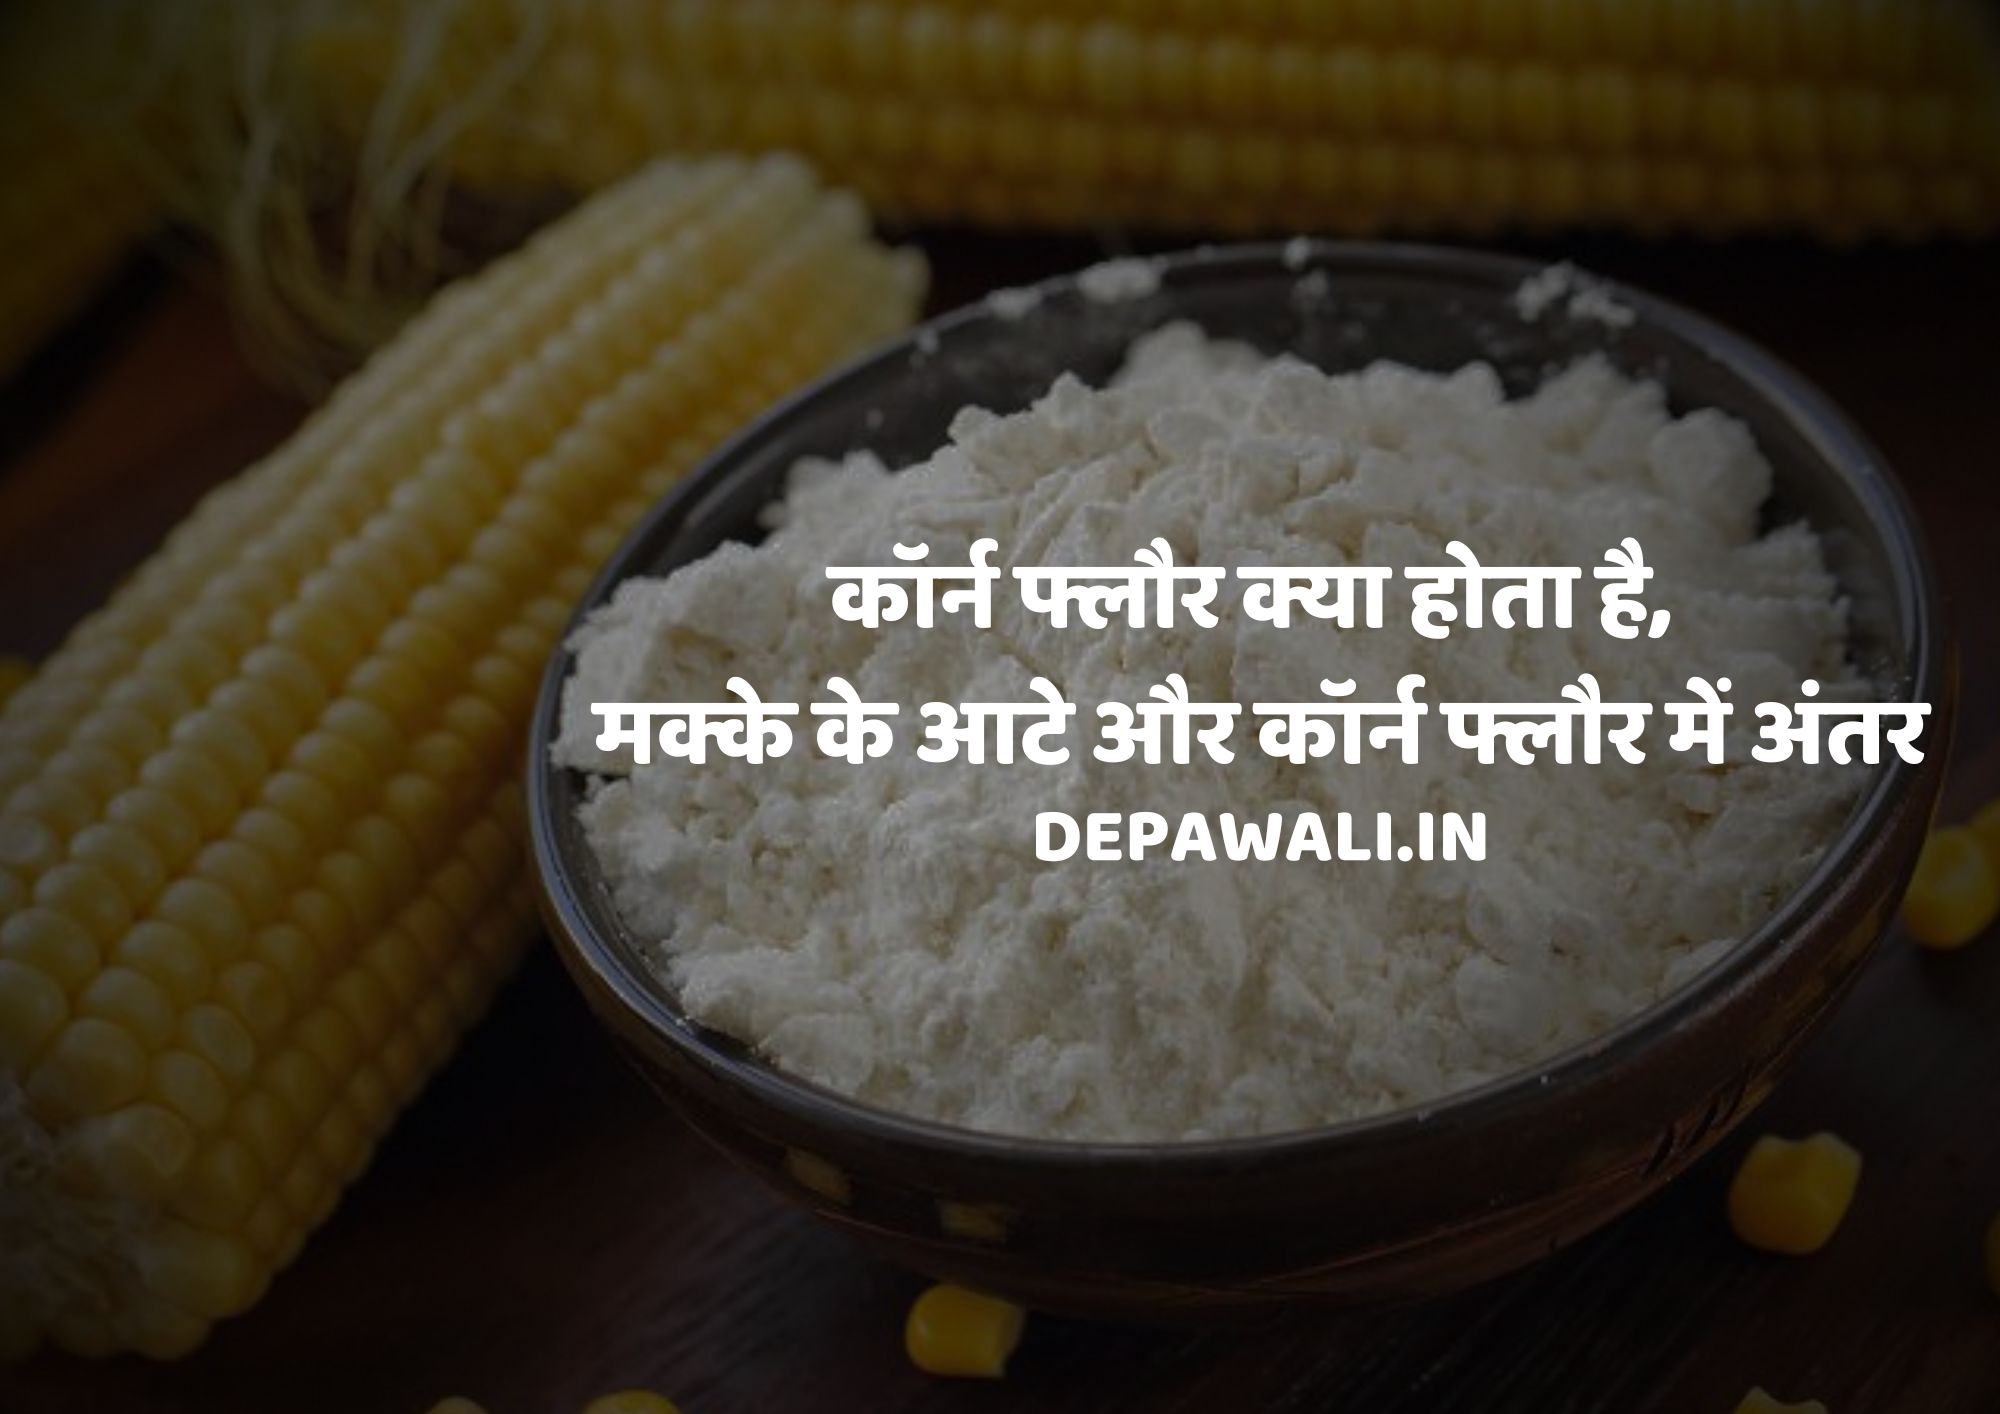 कॉर्न फ्लौर क्या हैं, कॉर्न फ्लौर क्या होता है, मक्के के आटे और कॉर्न फ्लौर में अंतर - Corn Flour Meaning In Hindi - Corn Flour Kya Hota Hai In Hindi